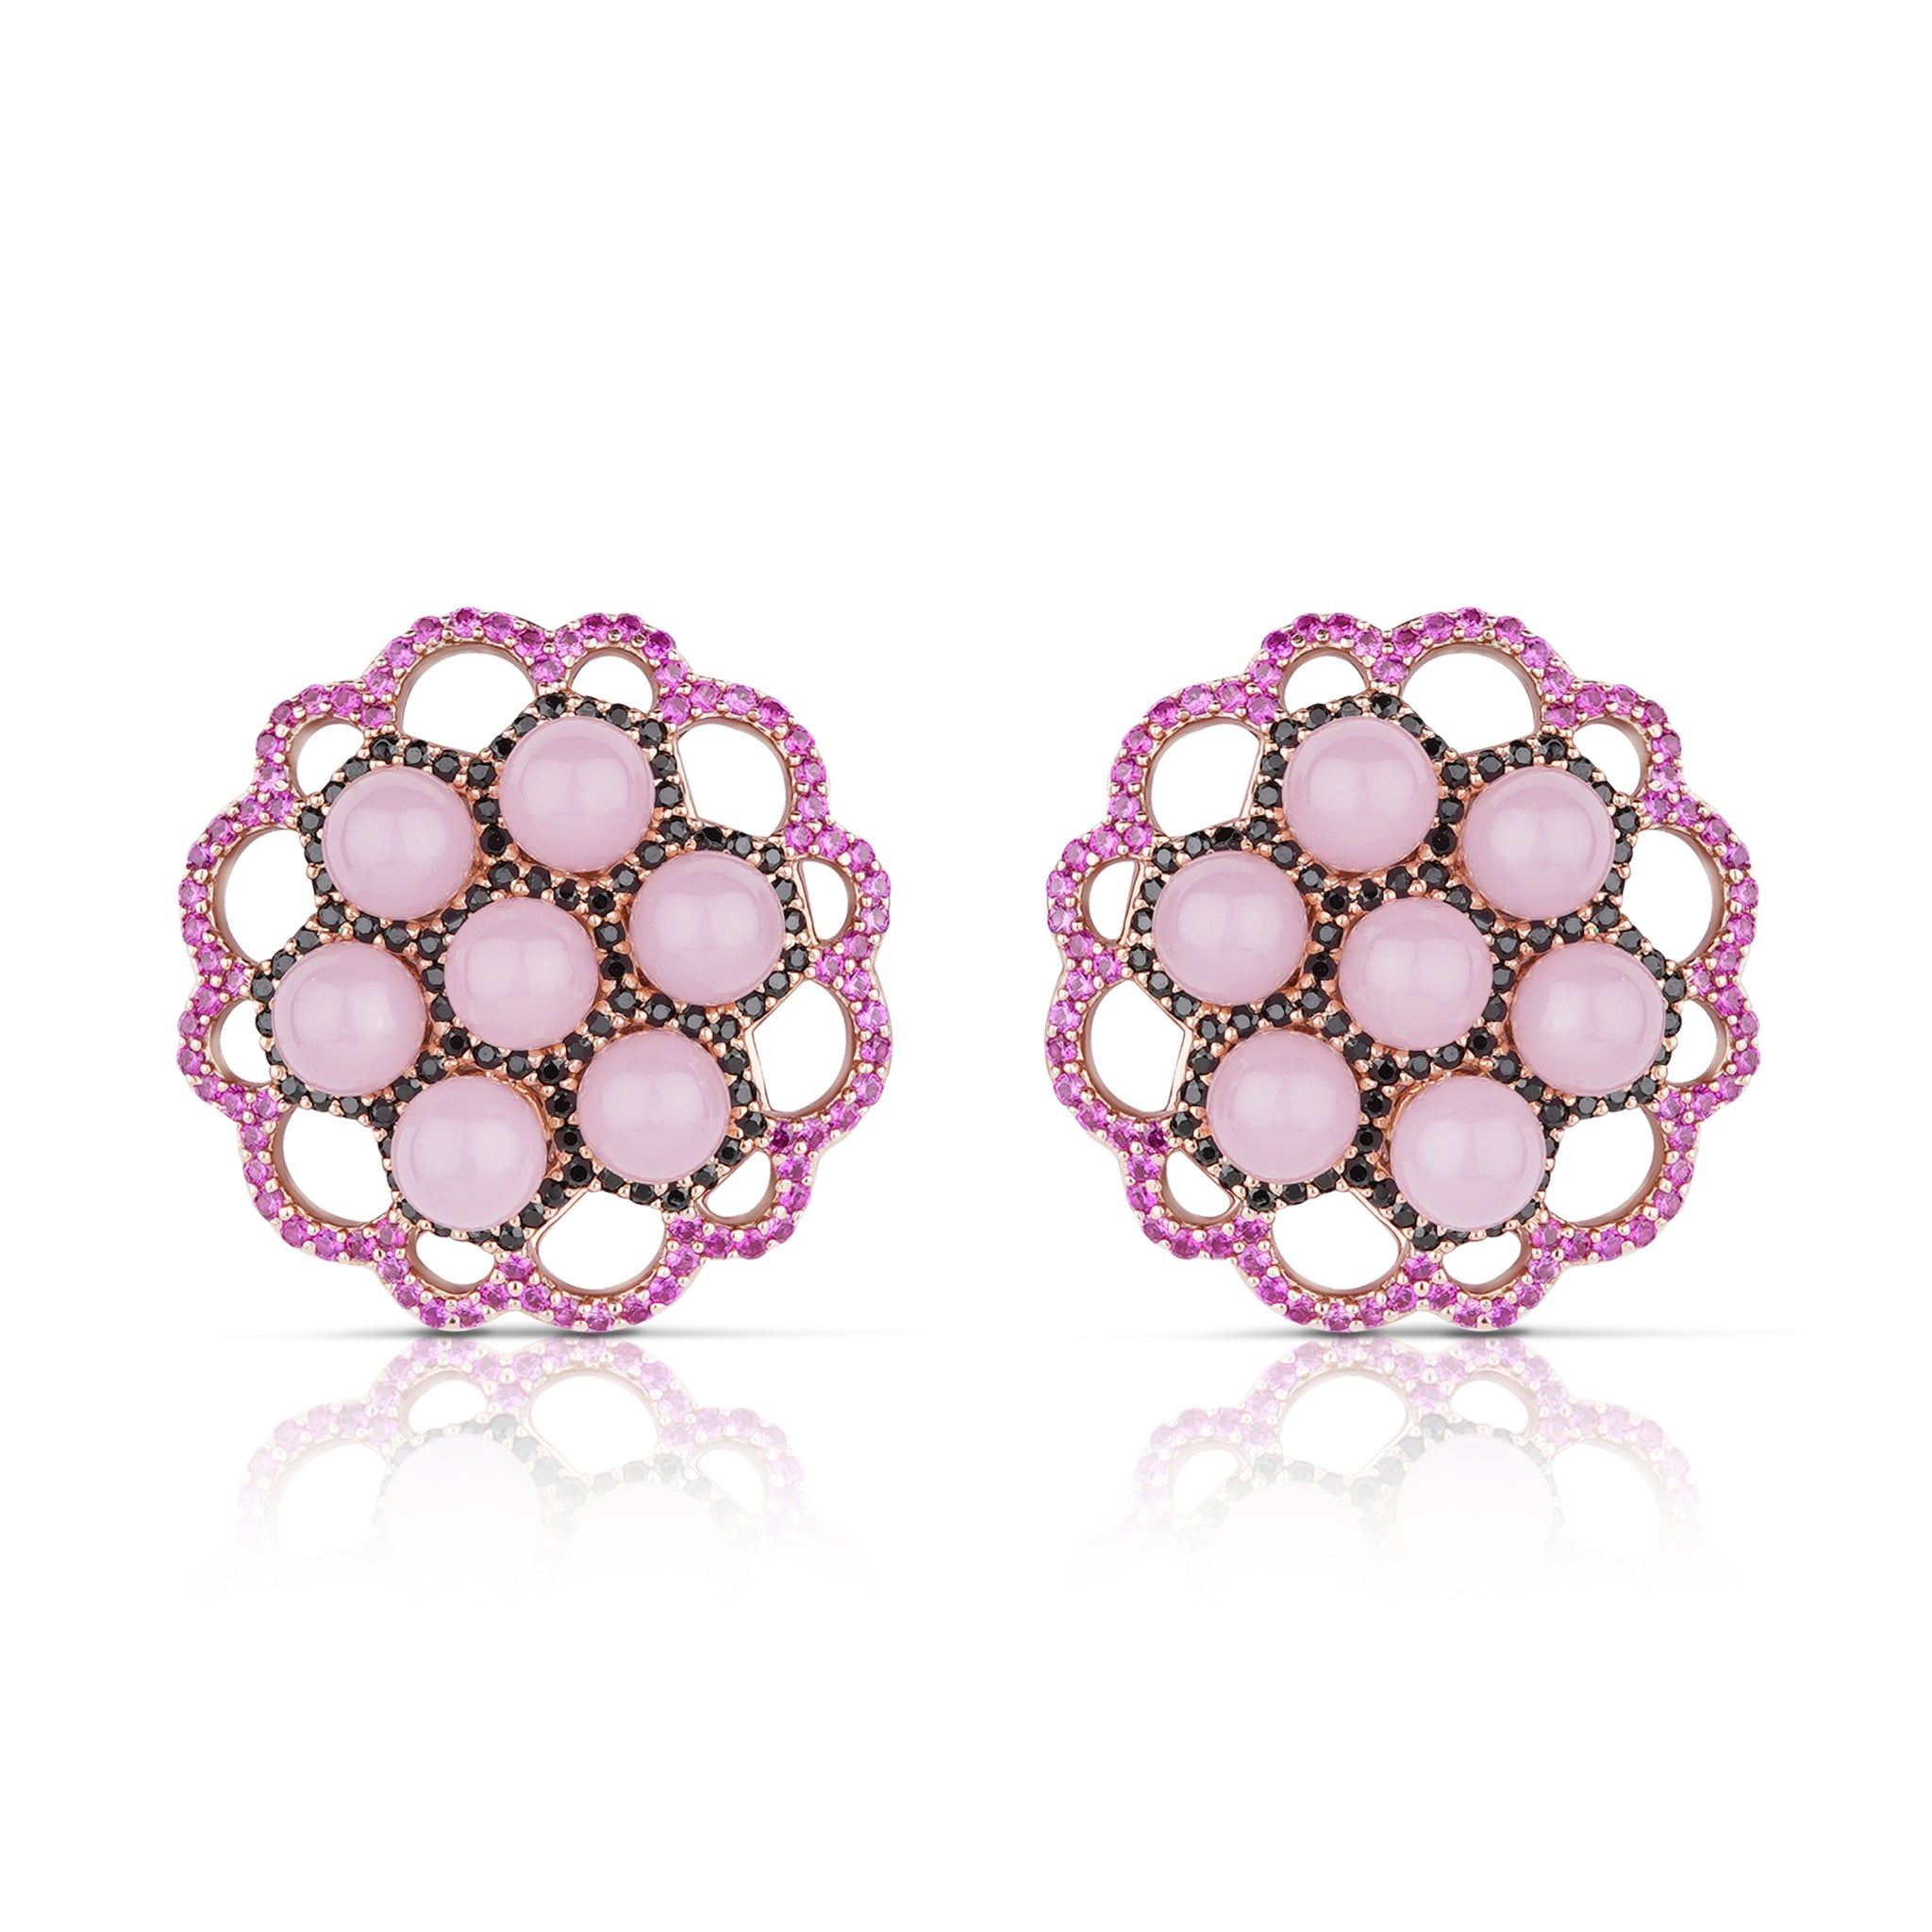 Cluster Pearls Earrings